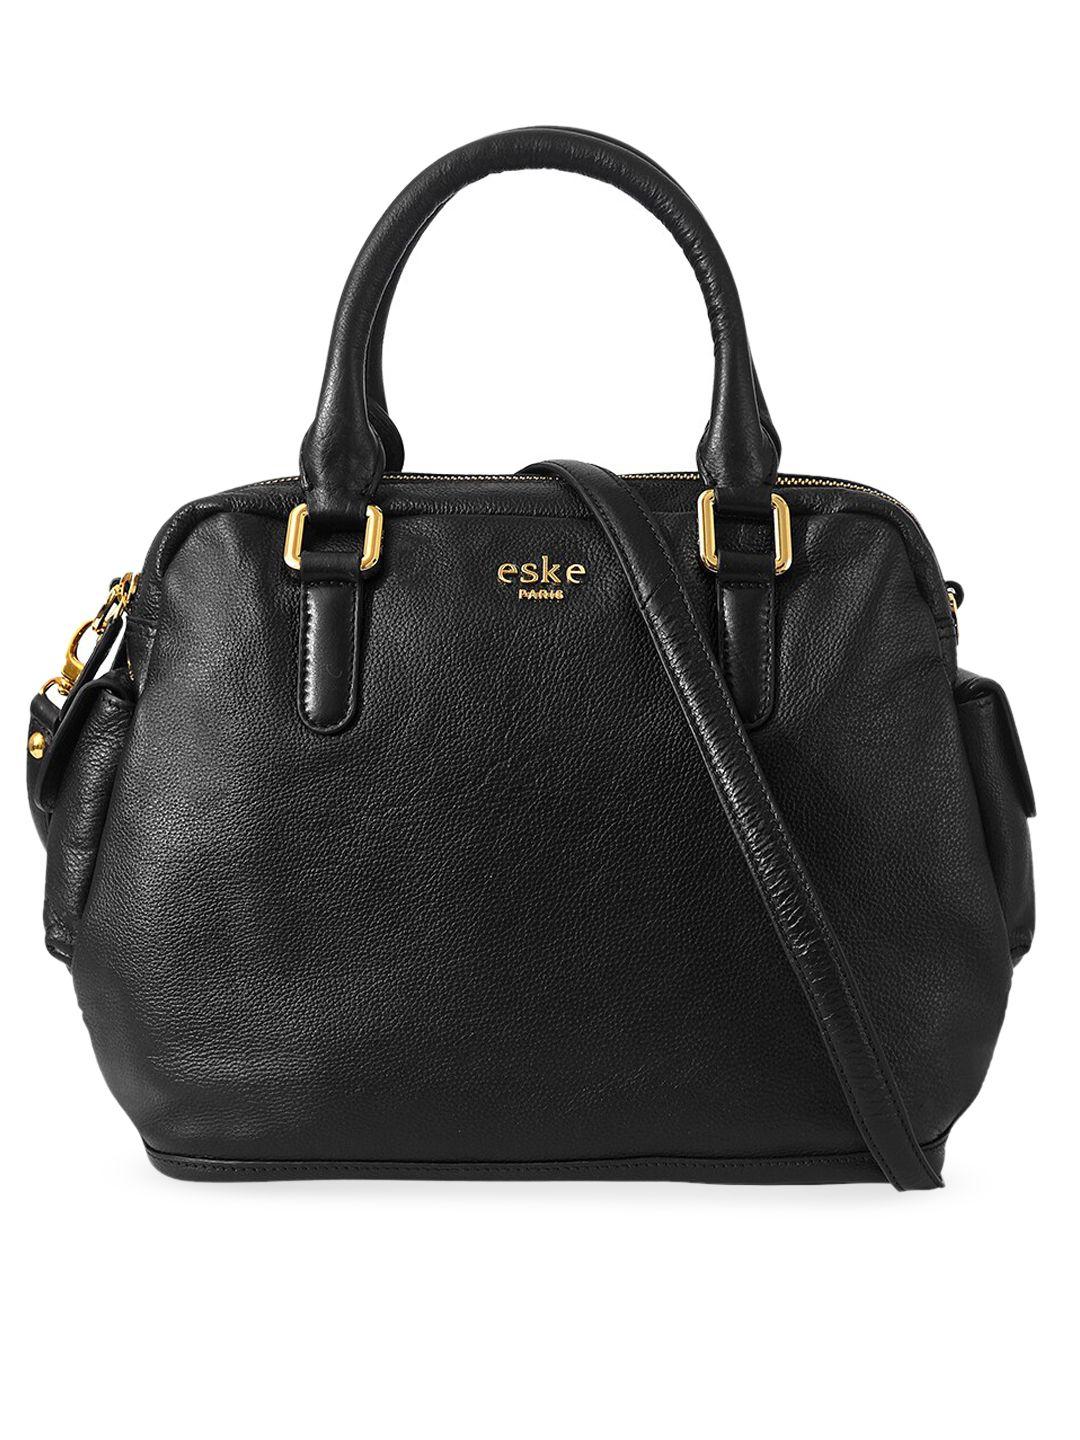 eske black leather structured handheld bag